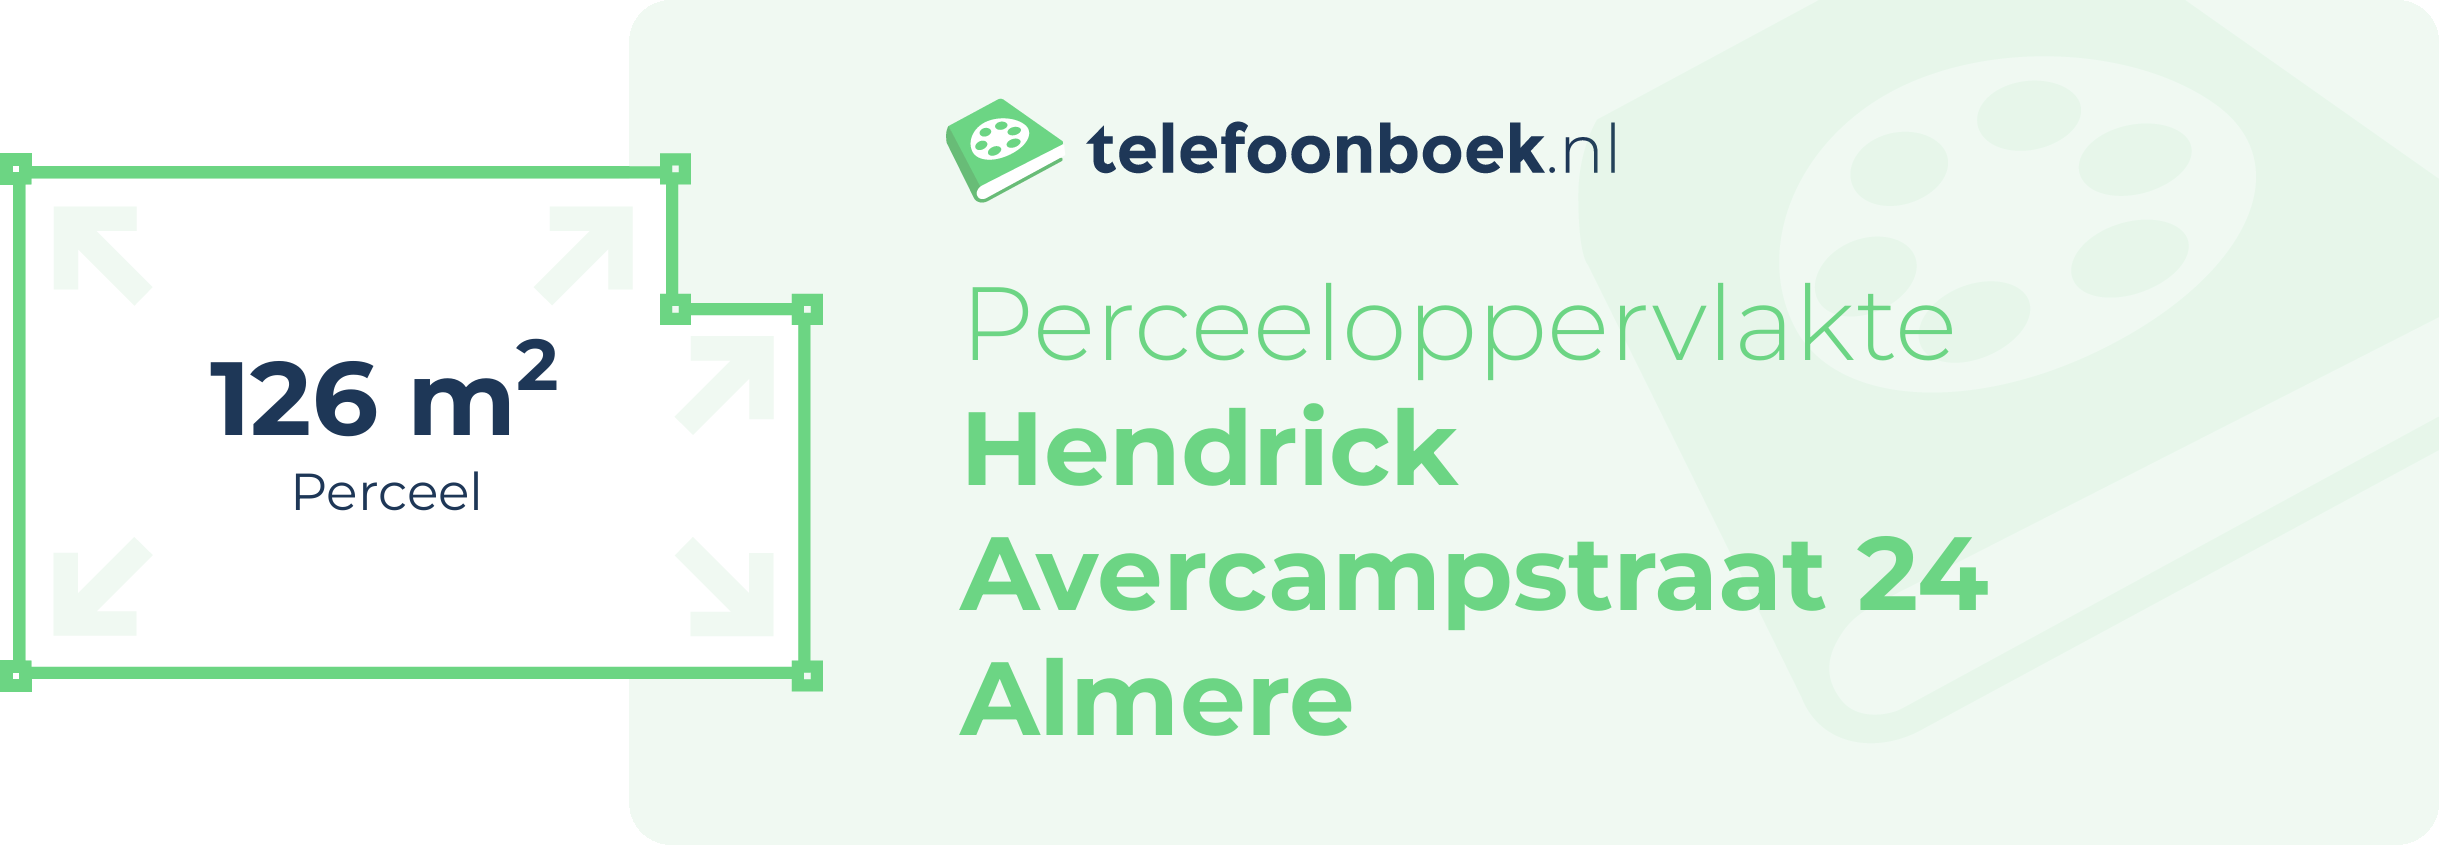 Perceeloppervlakte Hendrick Avercampstraat 24 Almere